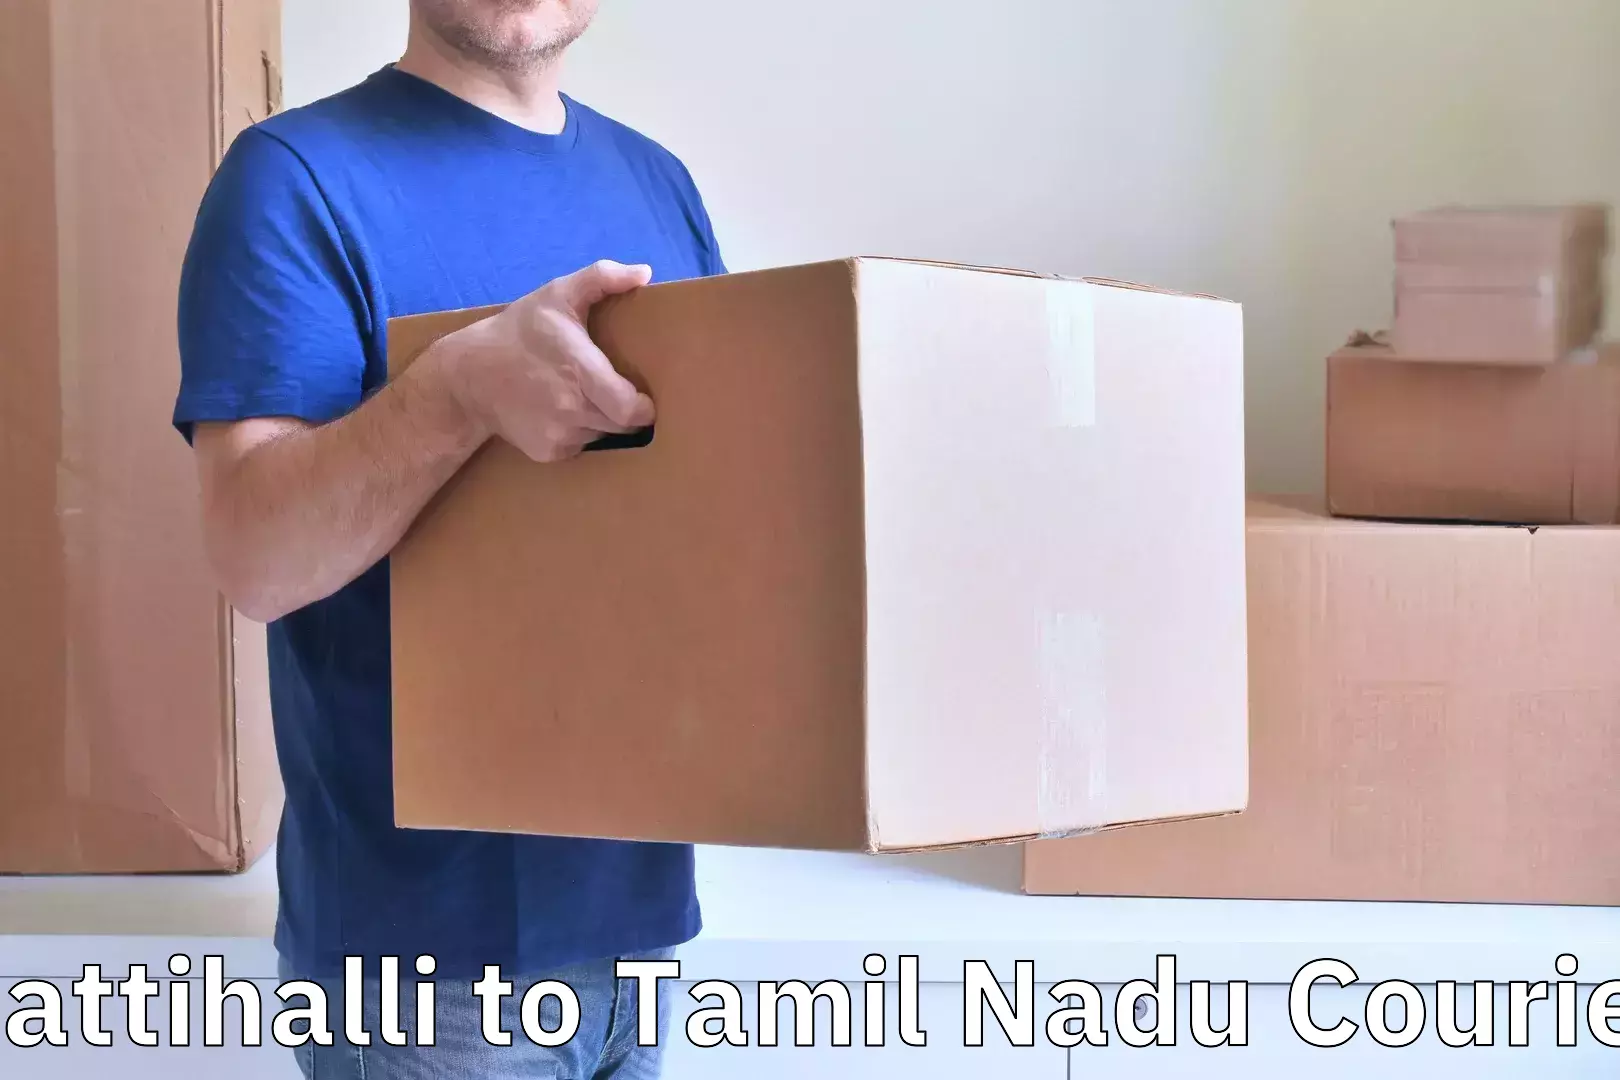 Professional baggage transport Rattihalli to Tamil Nadu